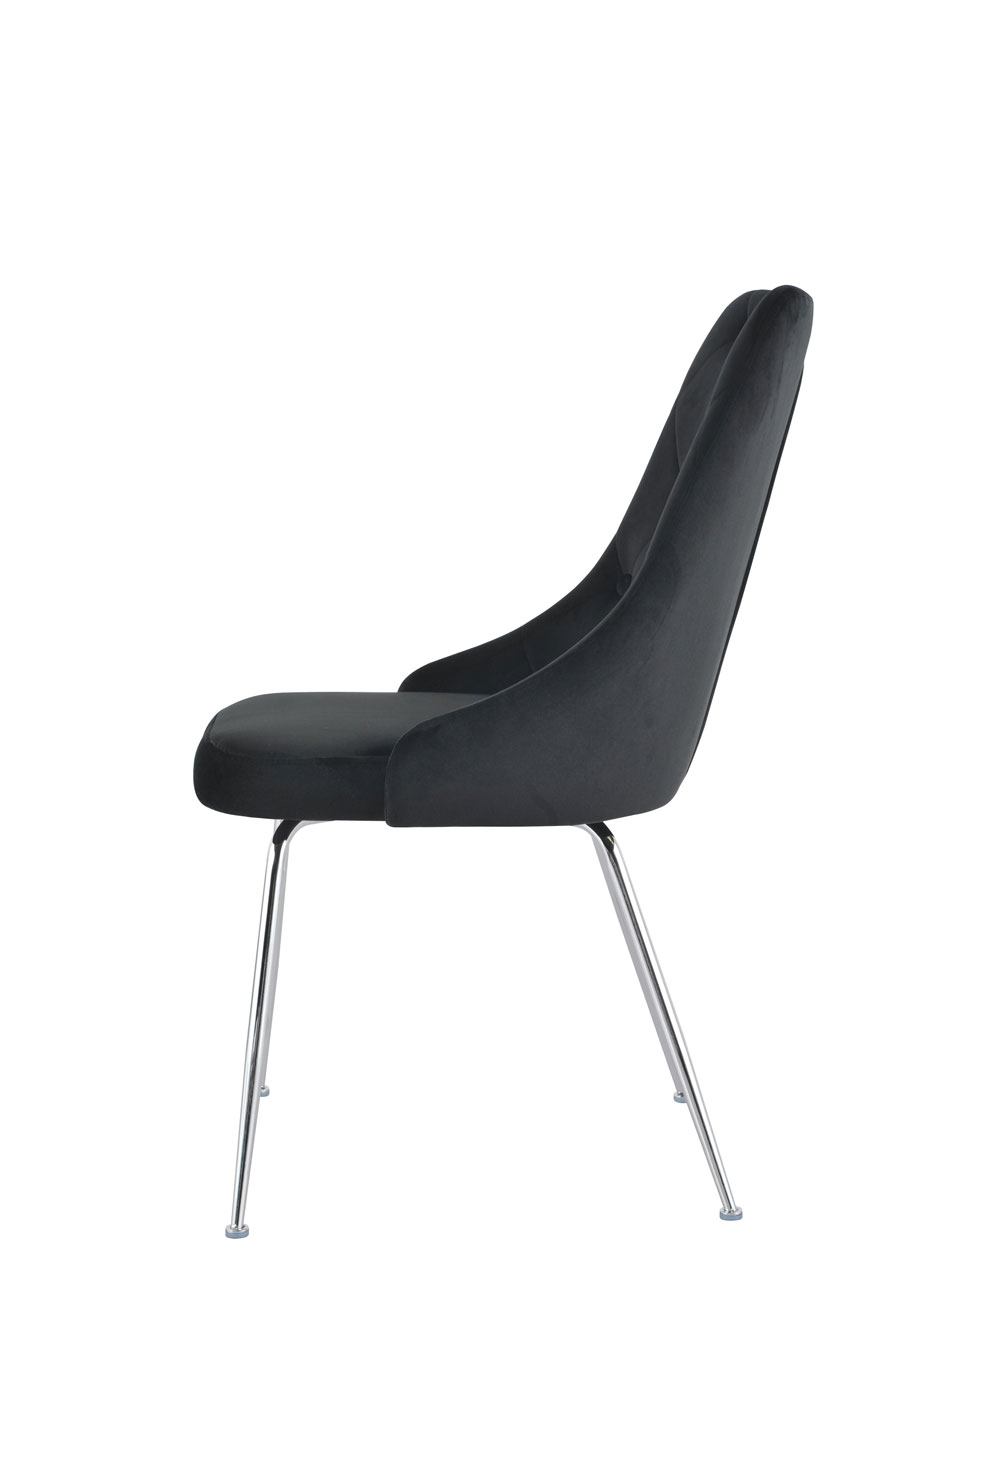 Plumeria Side Chair - Black, Chrome